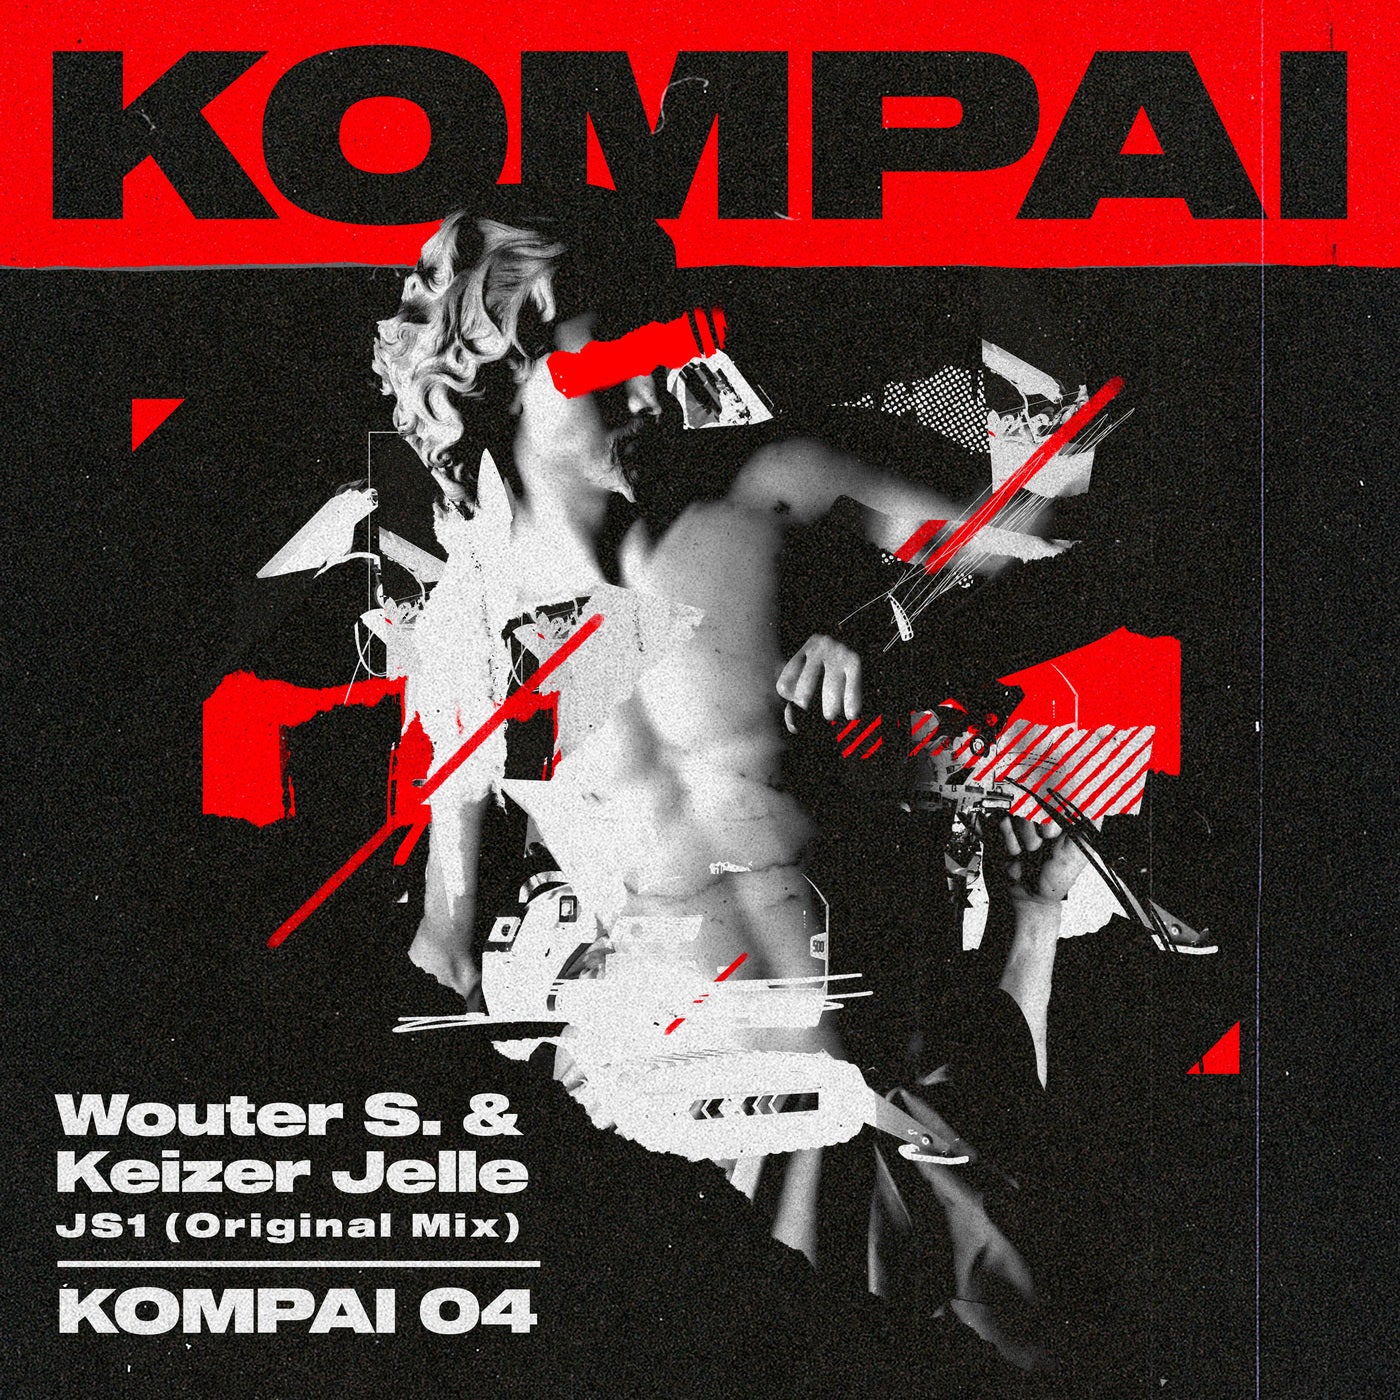 Kompai 04